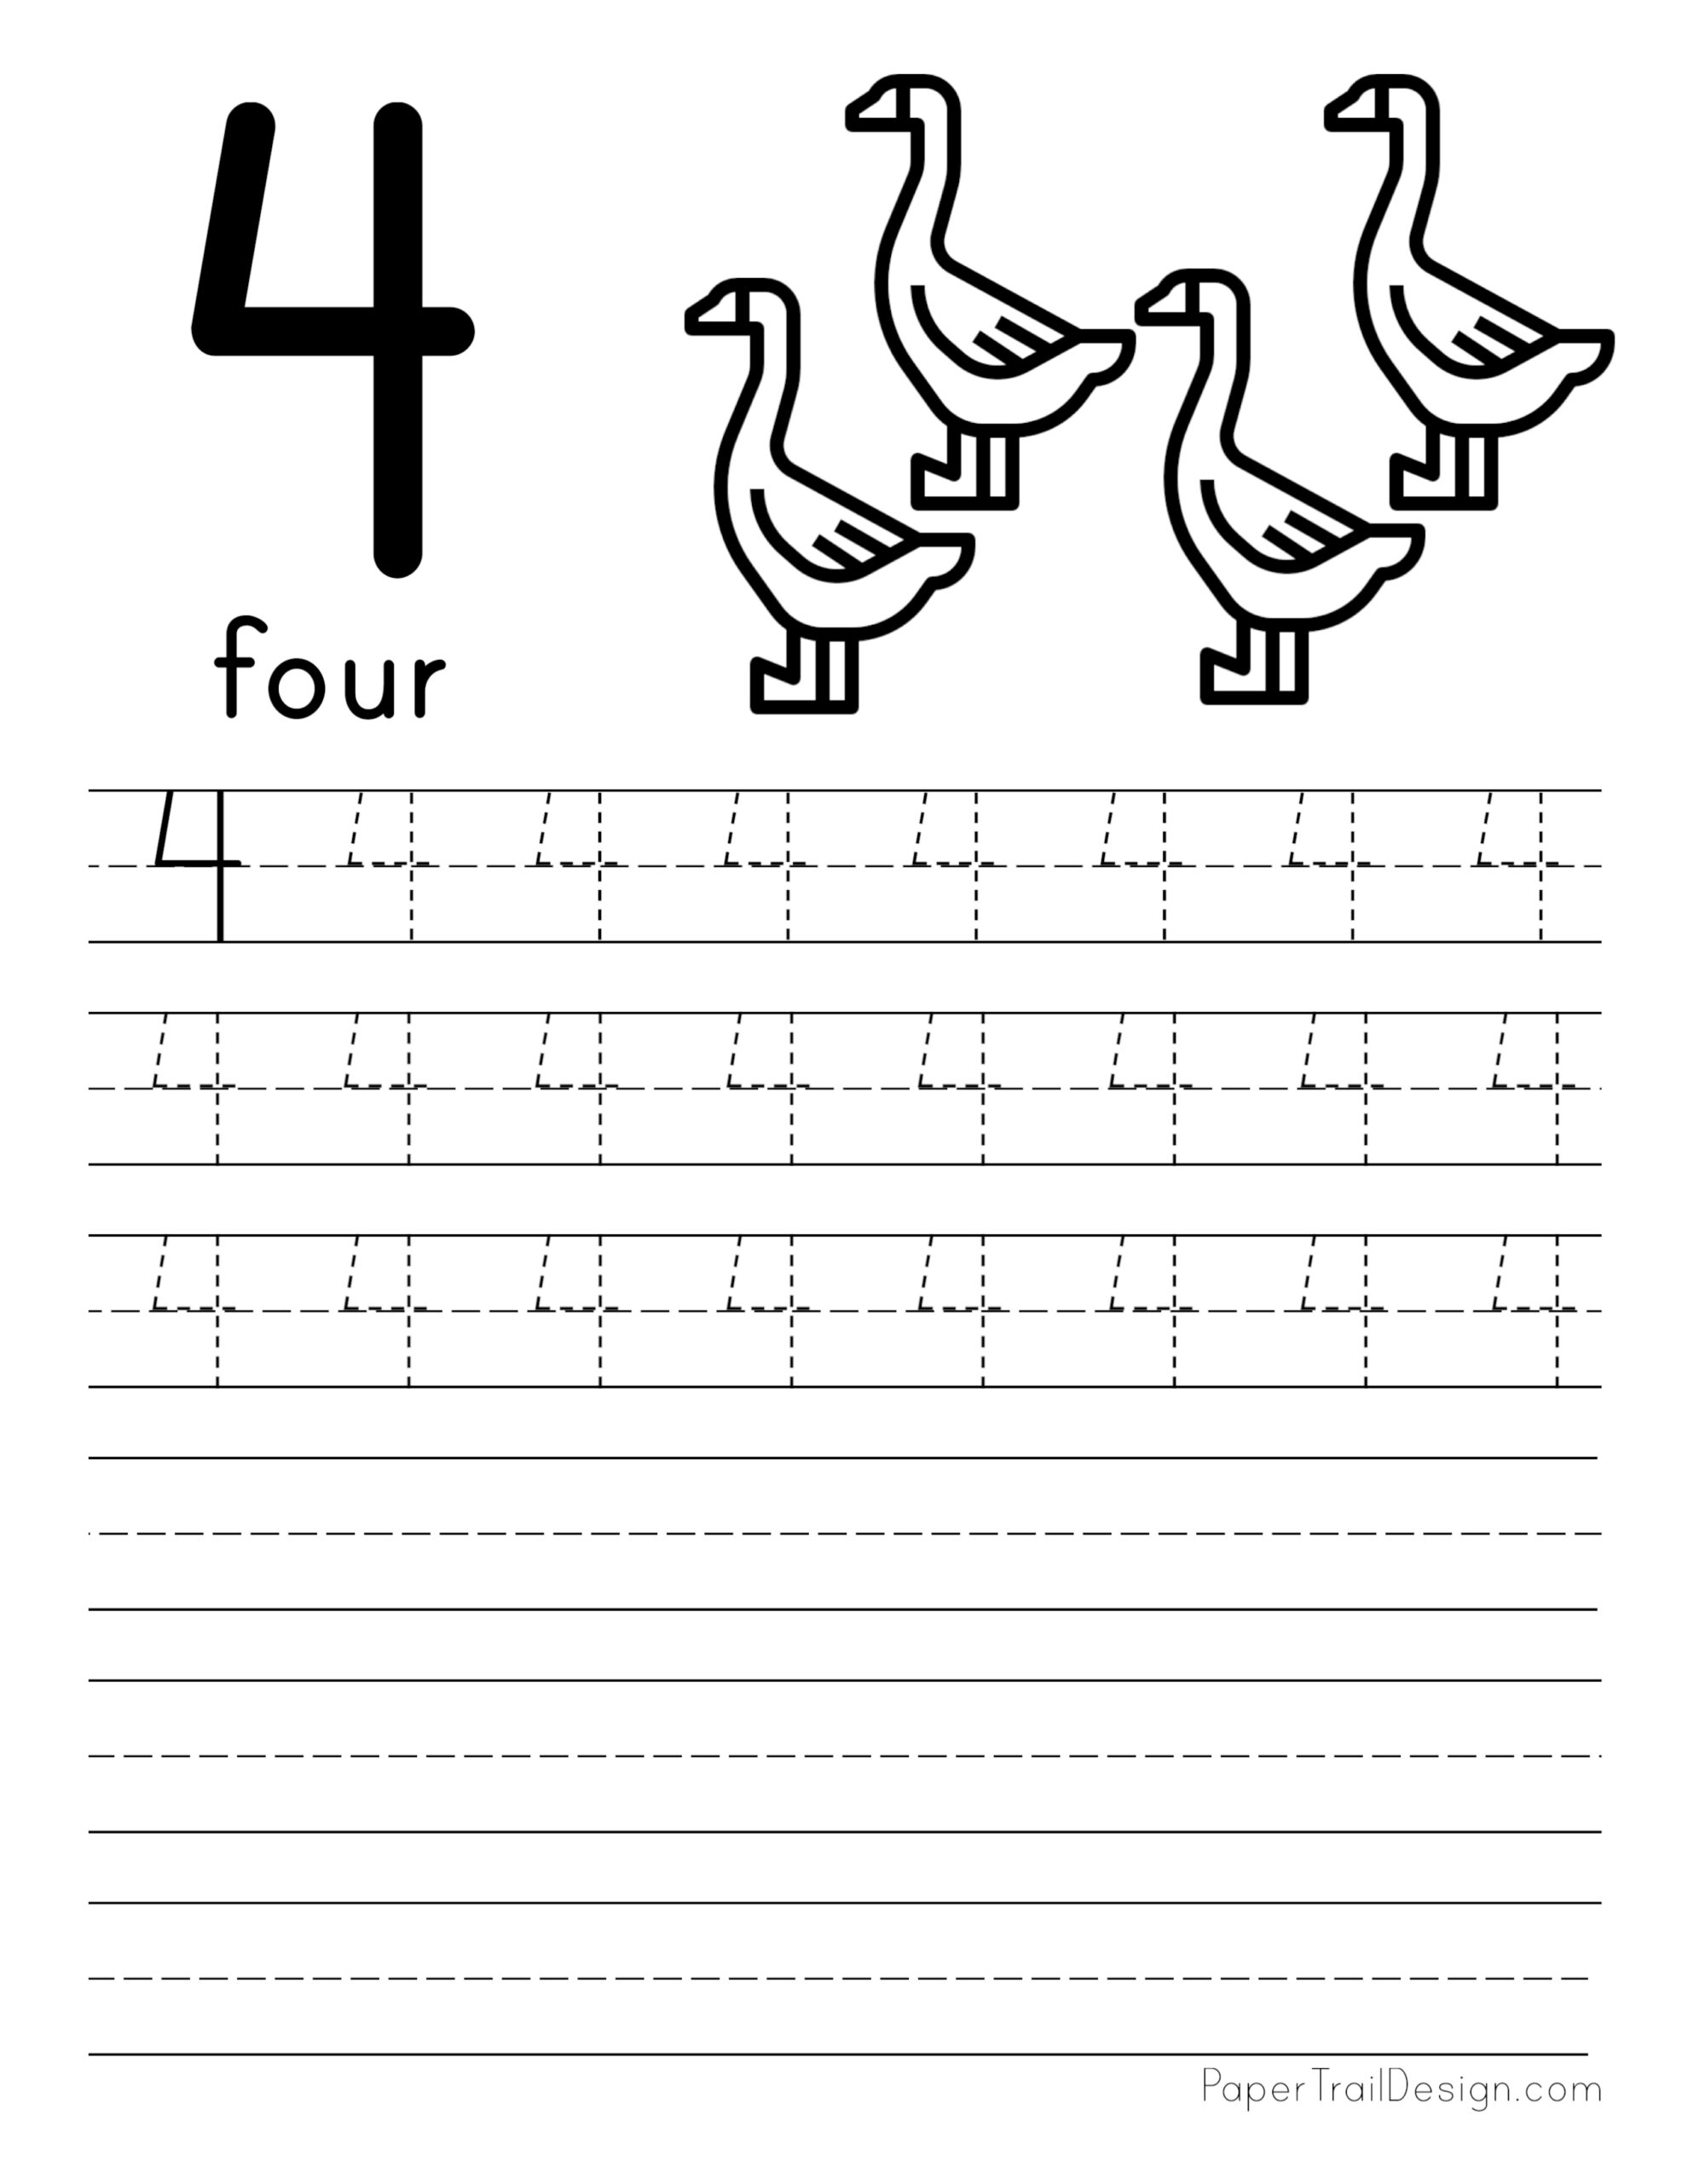 tracing-number-4-worksheets-for-kindergarten-goimages-vision